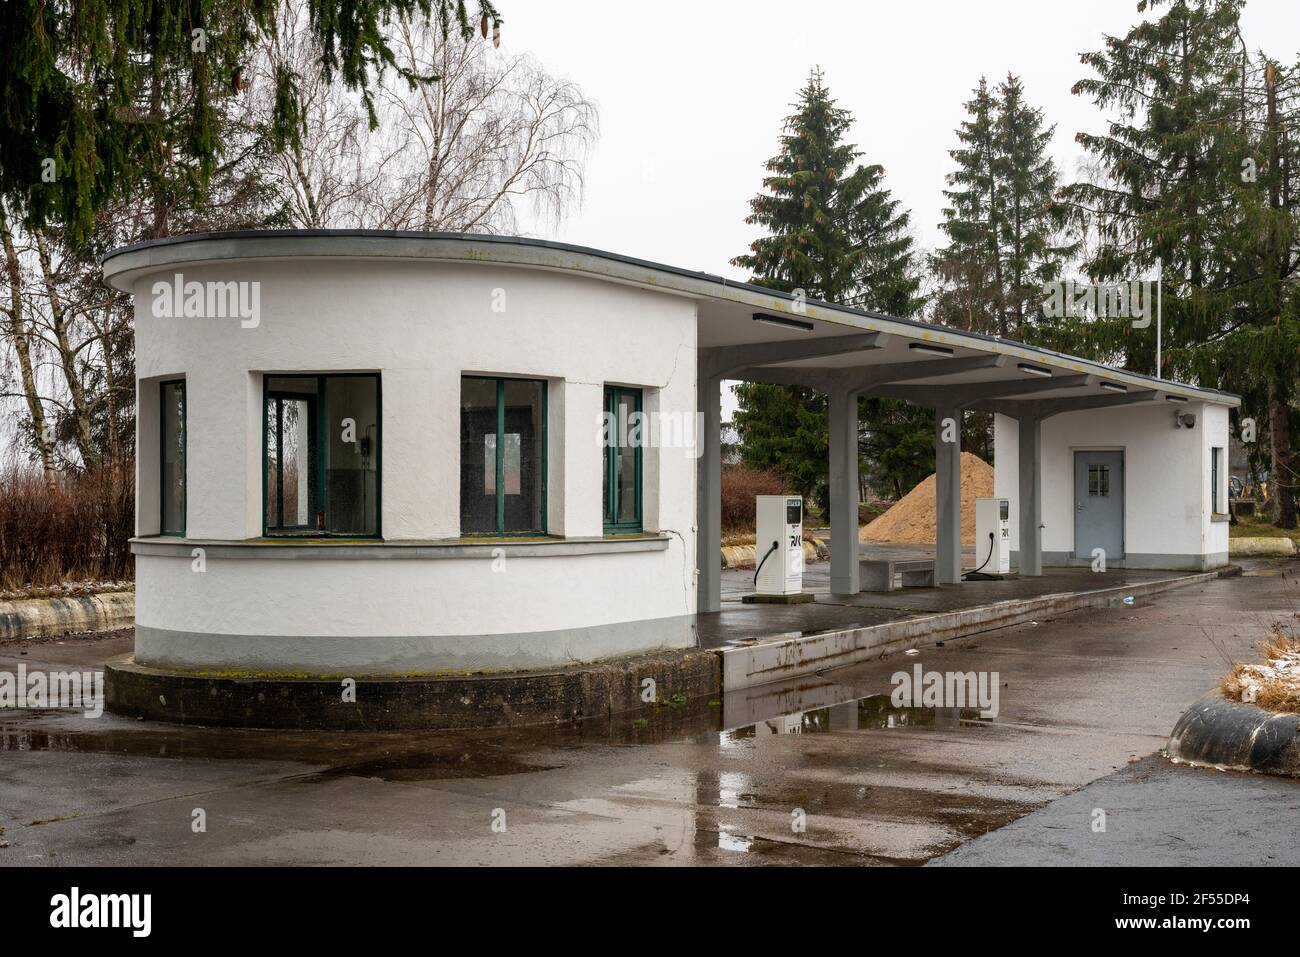 Schleiden-Gemünd, NS-Ordensburg Vogelsang, zwischen 1936 und 1939 als Schulungsstätte für den Nachwuchs des NSDAP-Führungskaders erbaut, Tankstelle au Stock Photo